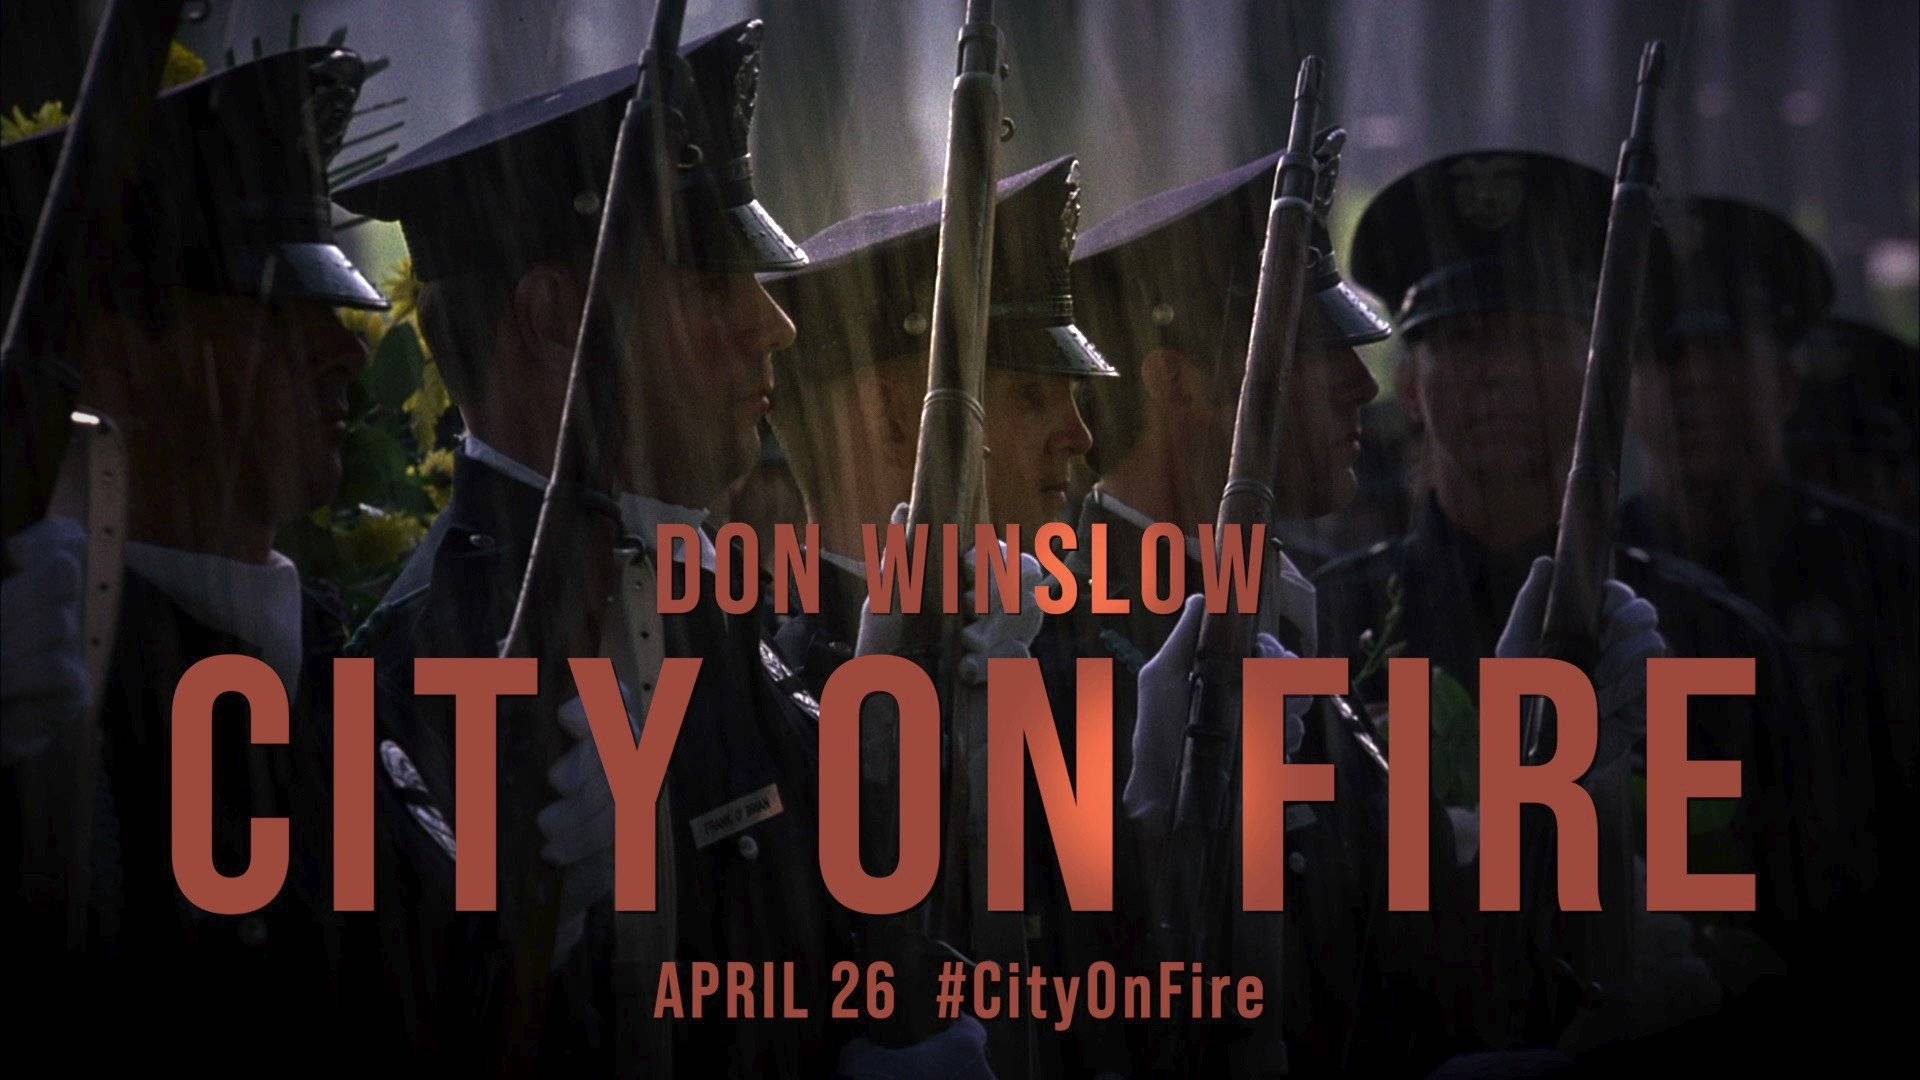 Promocional de City on Fire libro escrito por Don Winslow